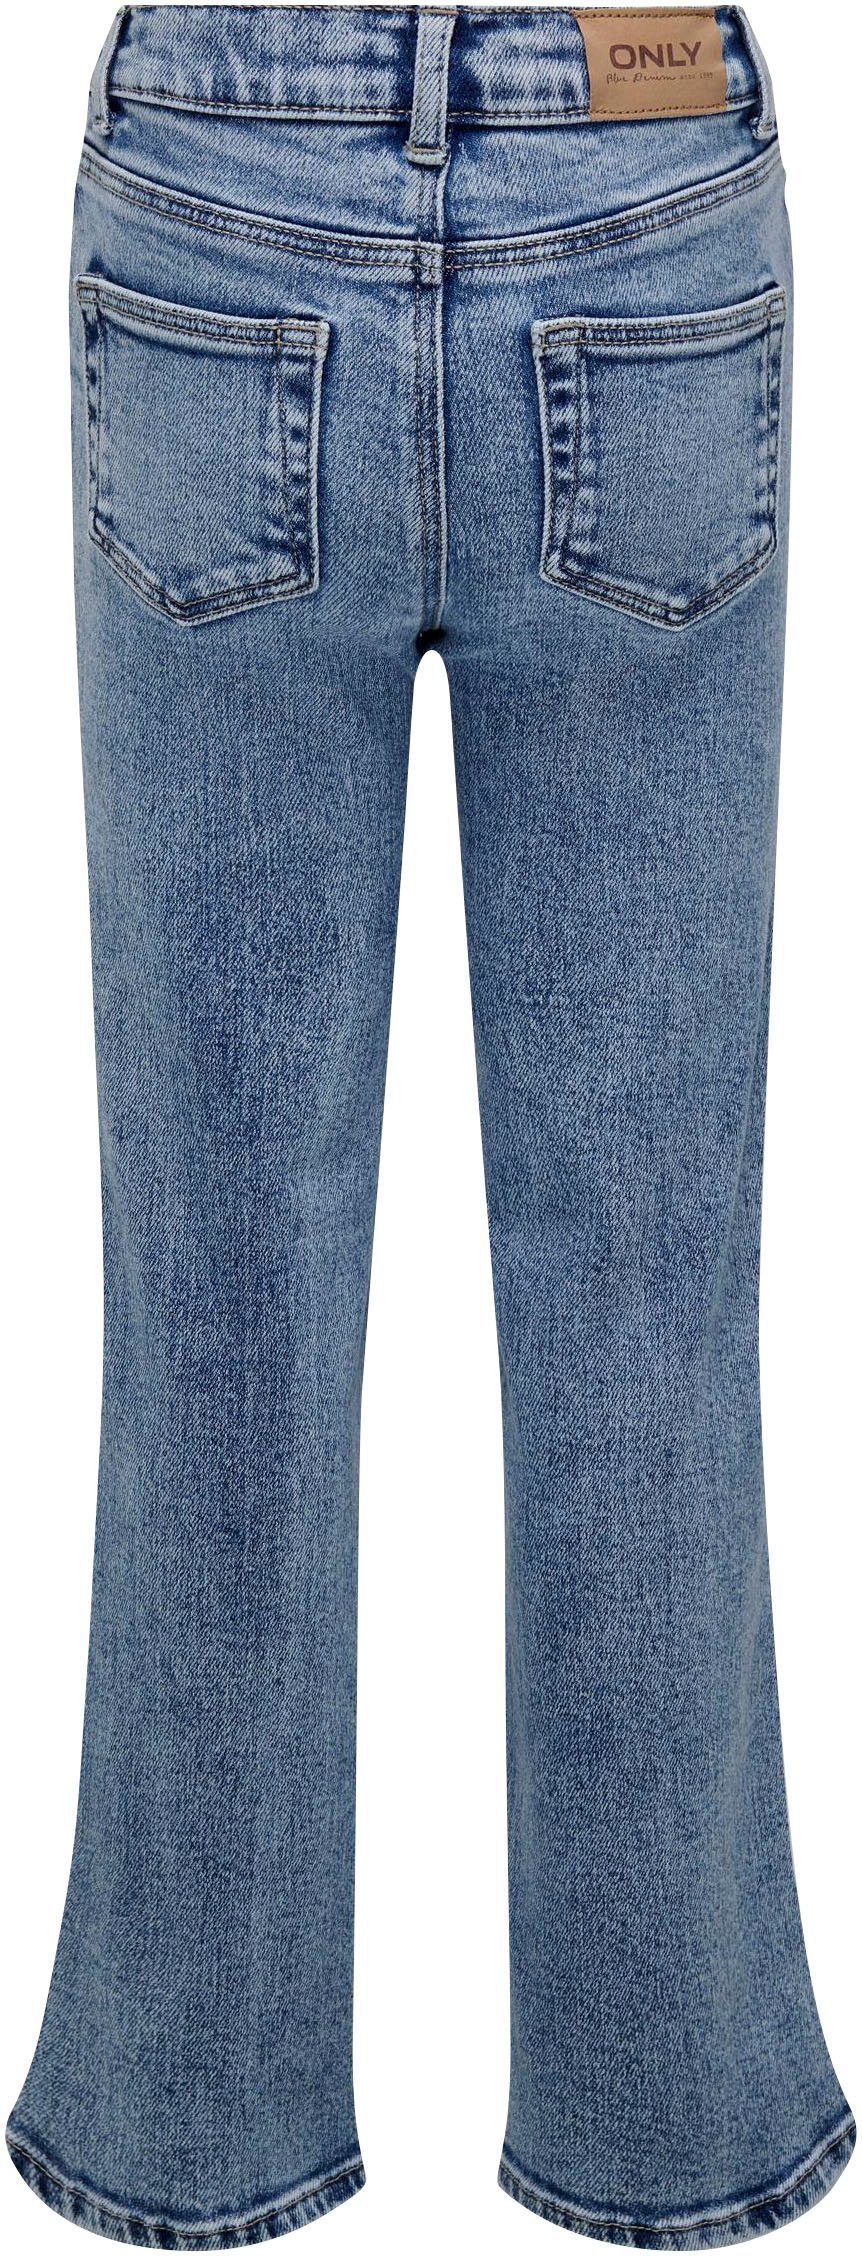 KIDS 5-Pocket-Jeans WIDE DN KOGJUICY LEG ONLY DEST